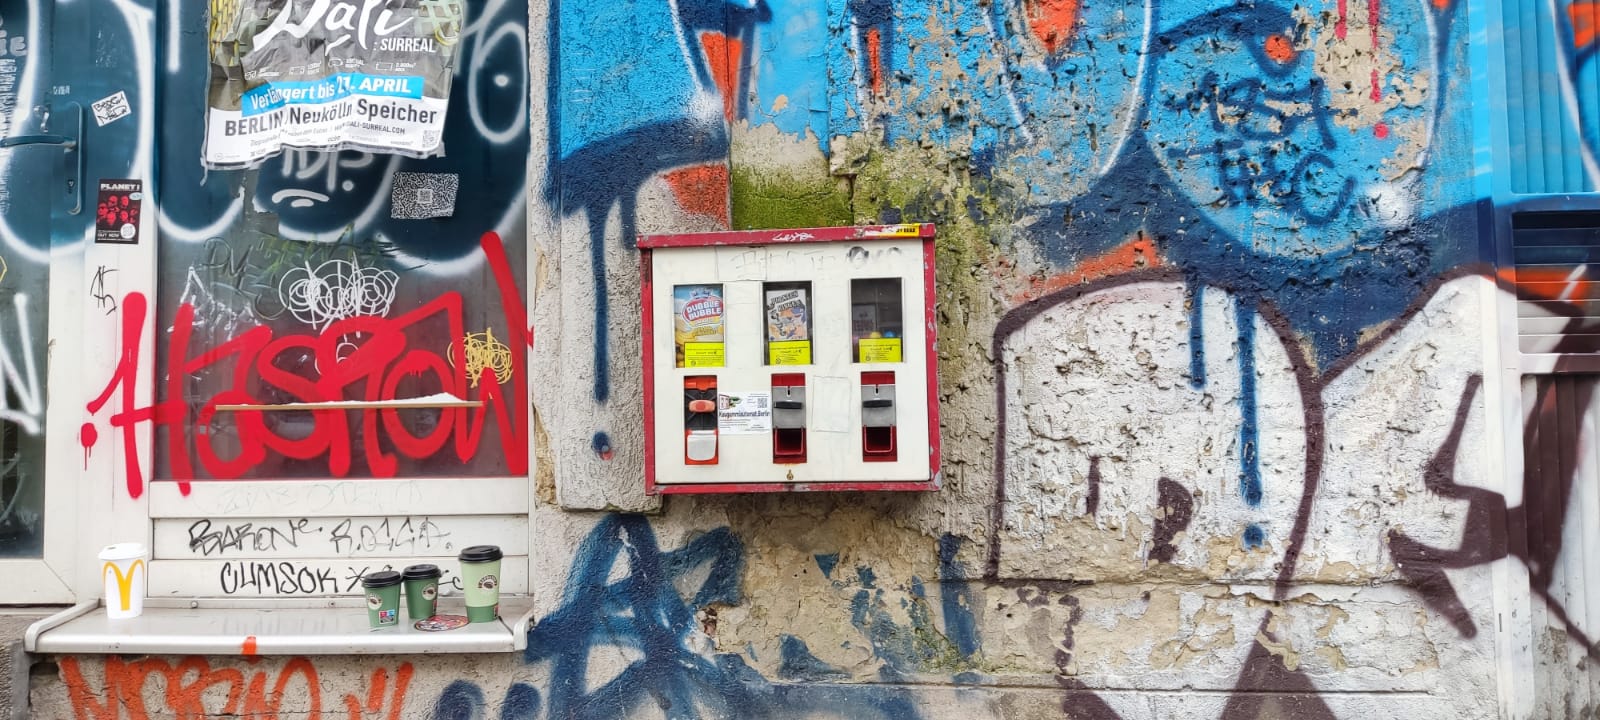 Kaugummiautomat Berlin neu Restauriert